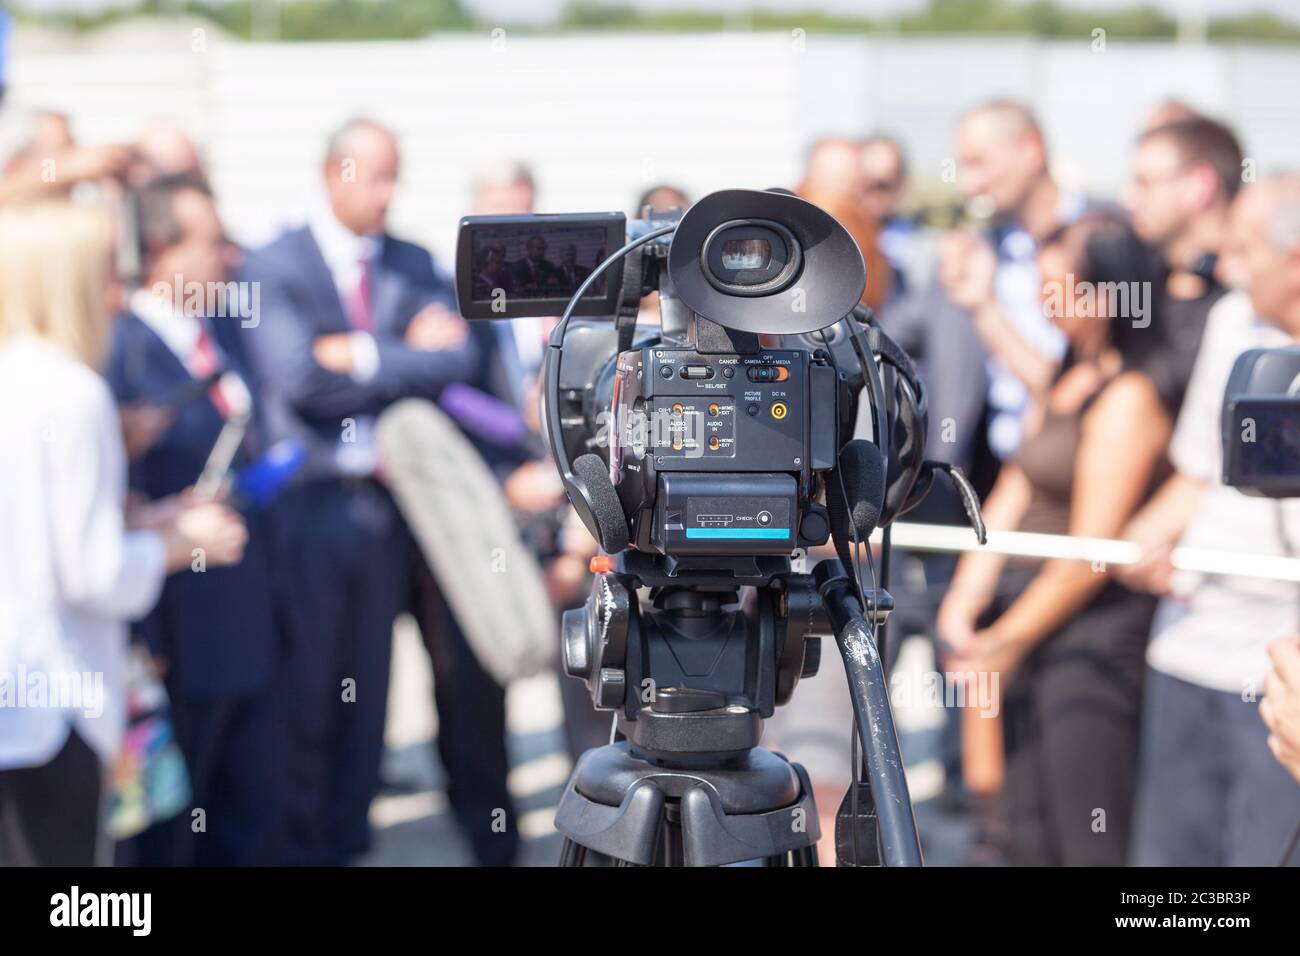 Filmer un événement médiatique avec une caméra vidéo. Conférence de presse. Banque D'Images